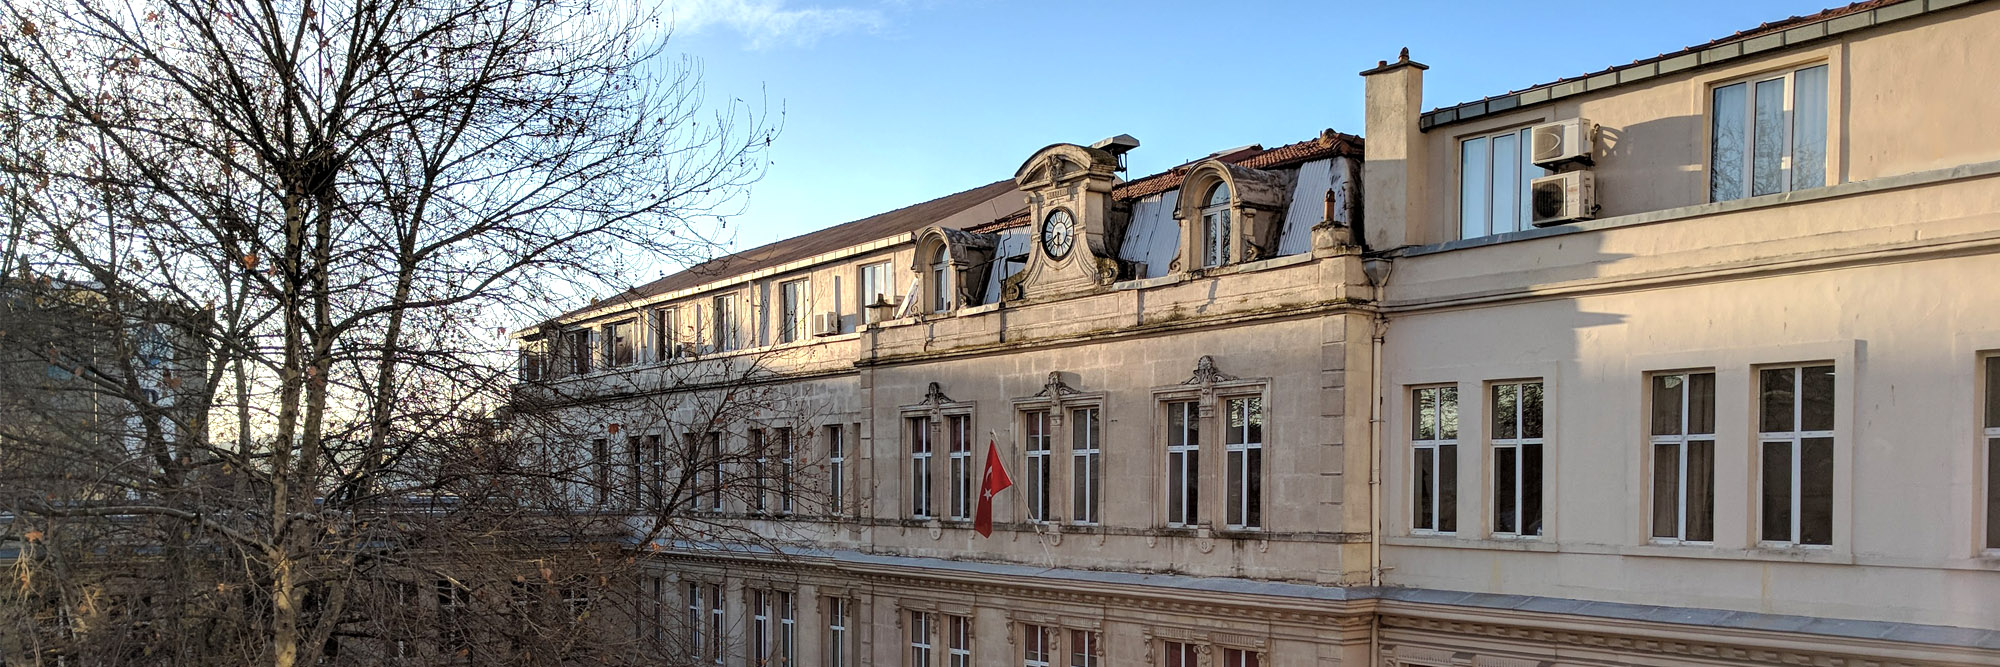 Saint Benoit Fransız Lisesi 2019-2020 Taban Puanı, Kontenjan Bilgisi ve Öğrenim Ücretleri